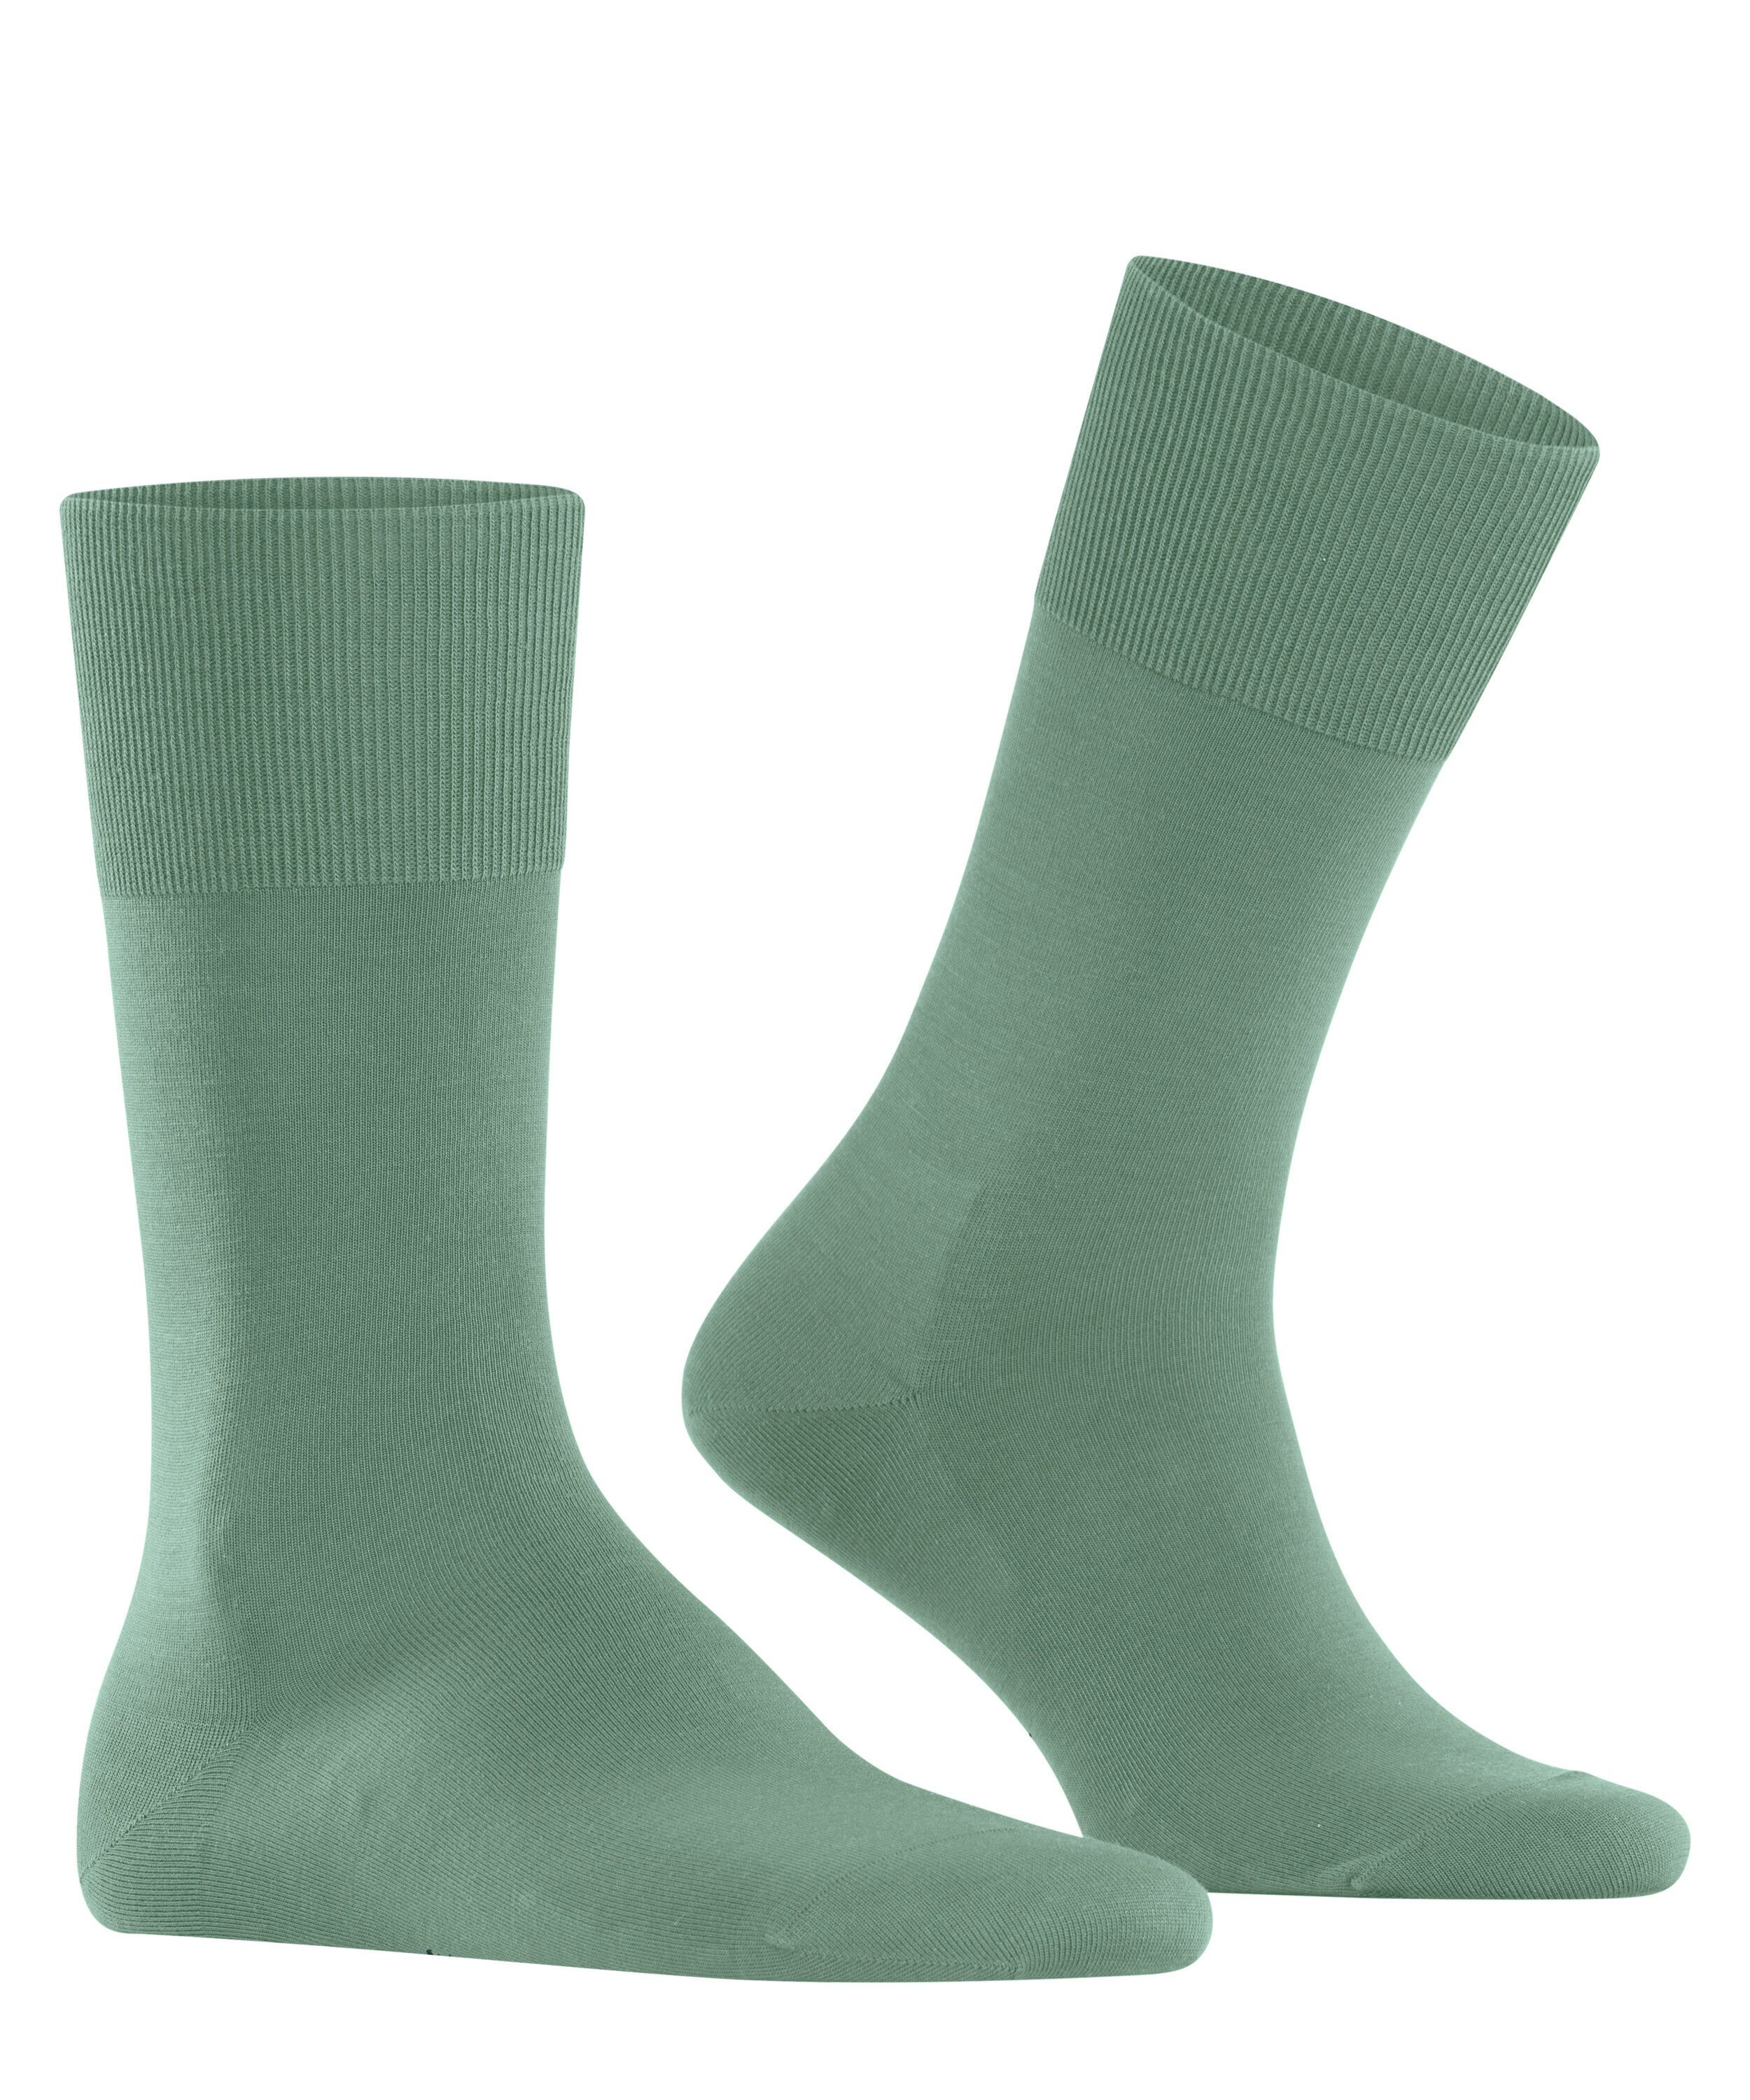 sage (7538) (1-Paar) Socken ClimaWool FALKE